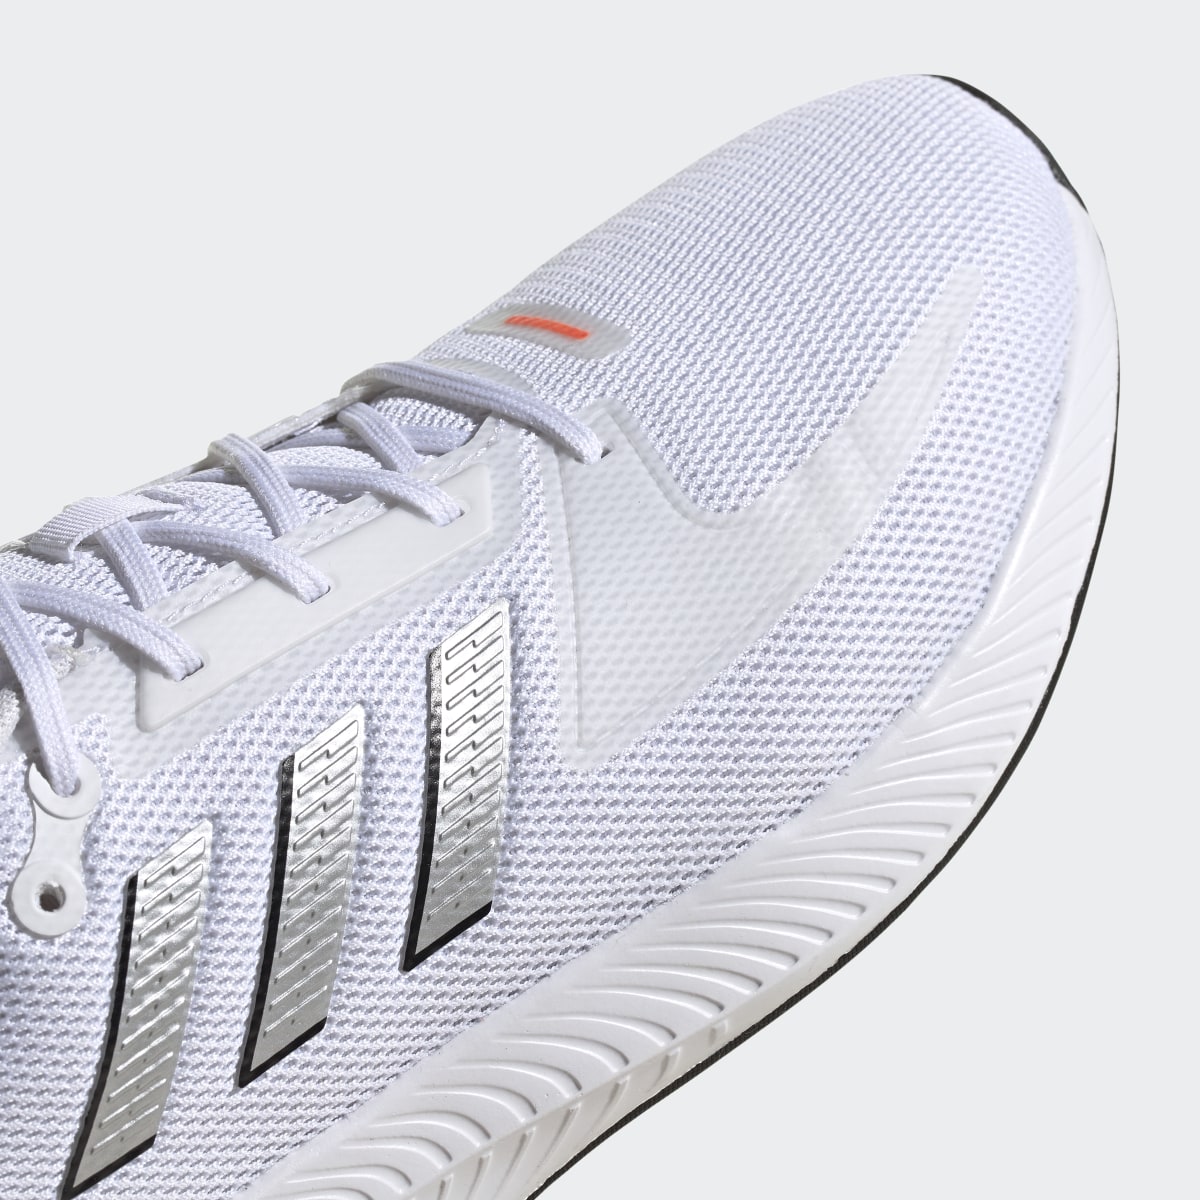 Adidas Run Falcon 2.0 Shoes. 8